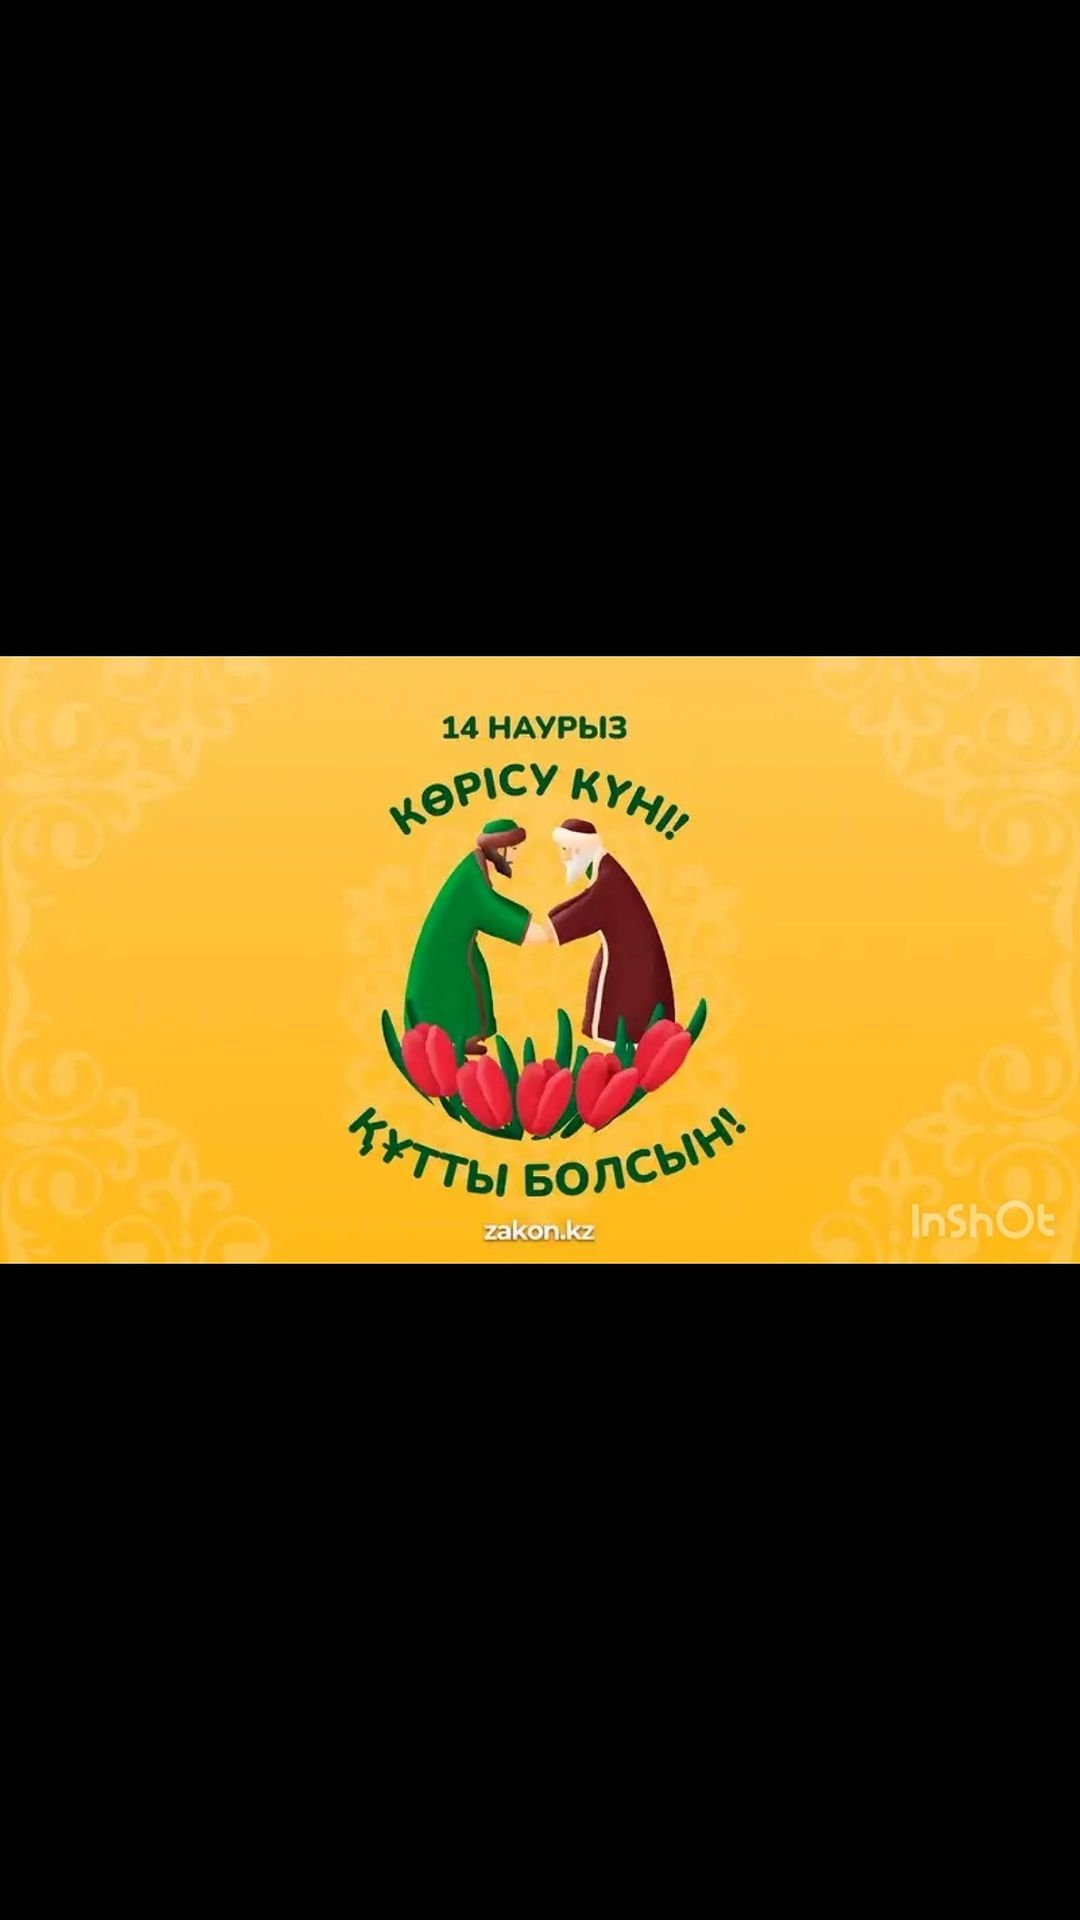 14 марта казахстанцы традиционно отмечают Көрісу күні, или праздник Амал.